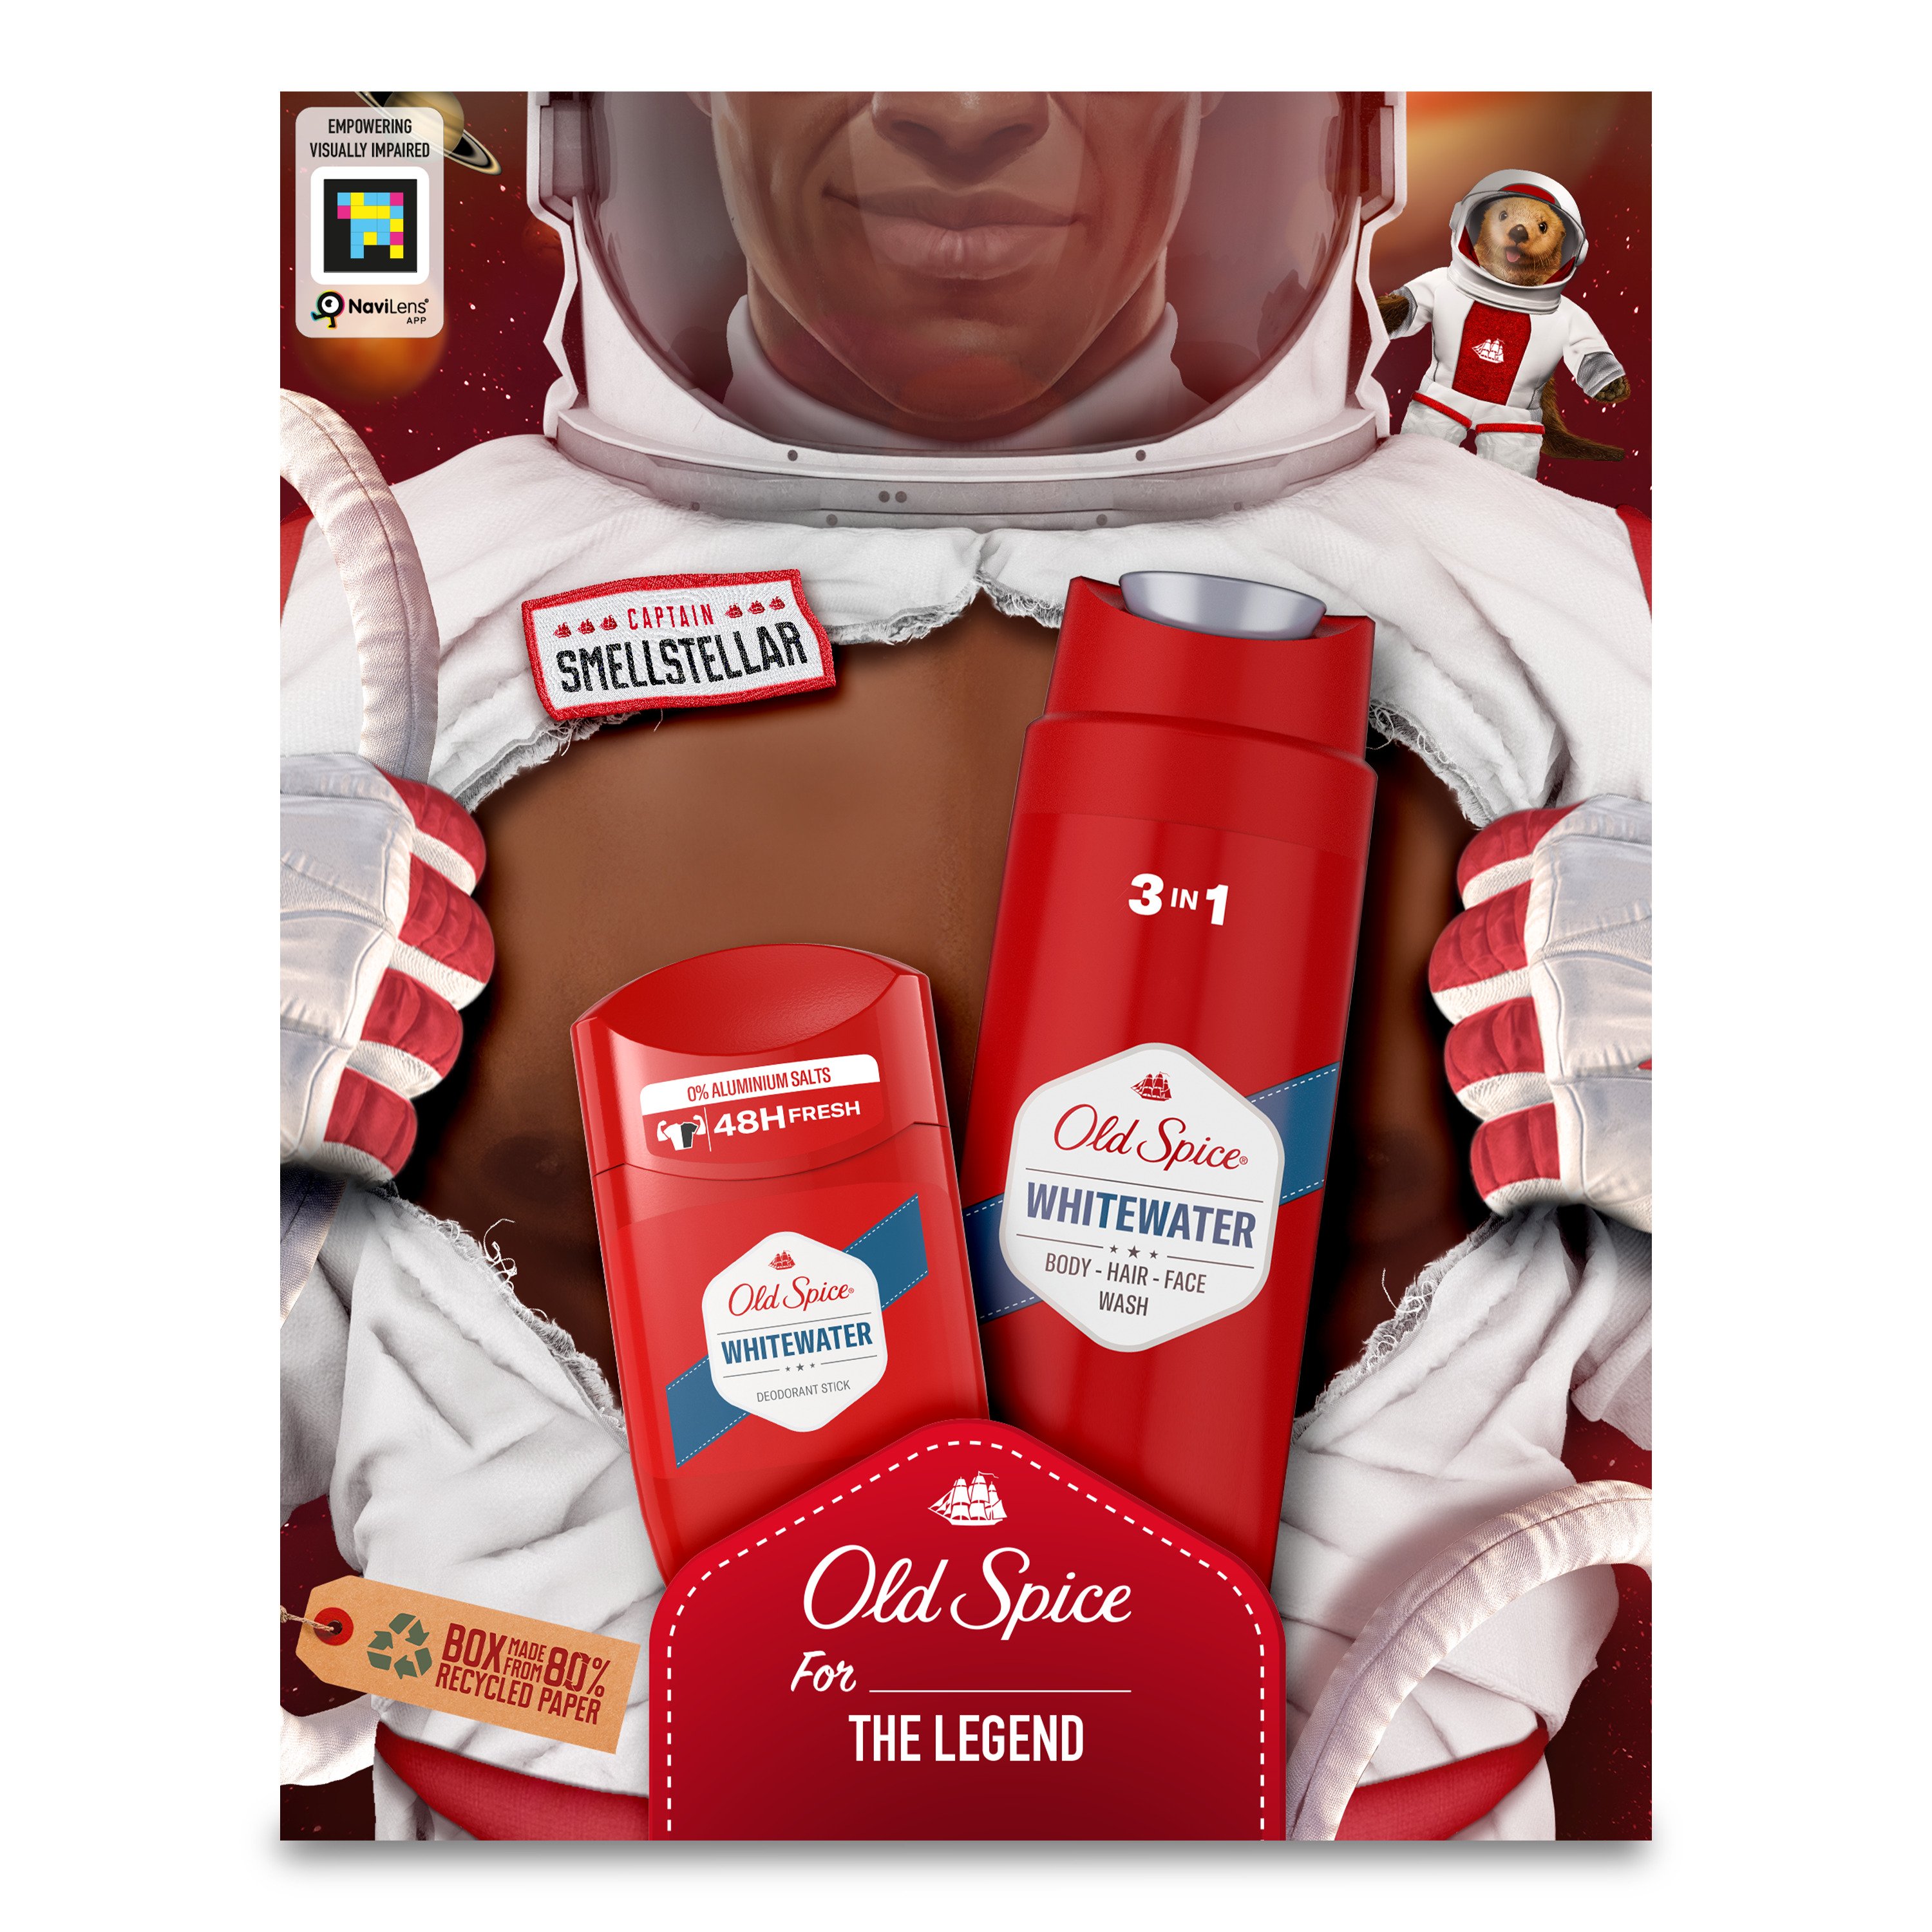 Подарочный набор для мужчин Old Spice Astronaut WhiteWater: твердый дезодорант 50 мл + гель для душа 3 в 1 250 мл - фото 2